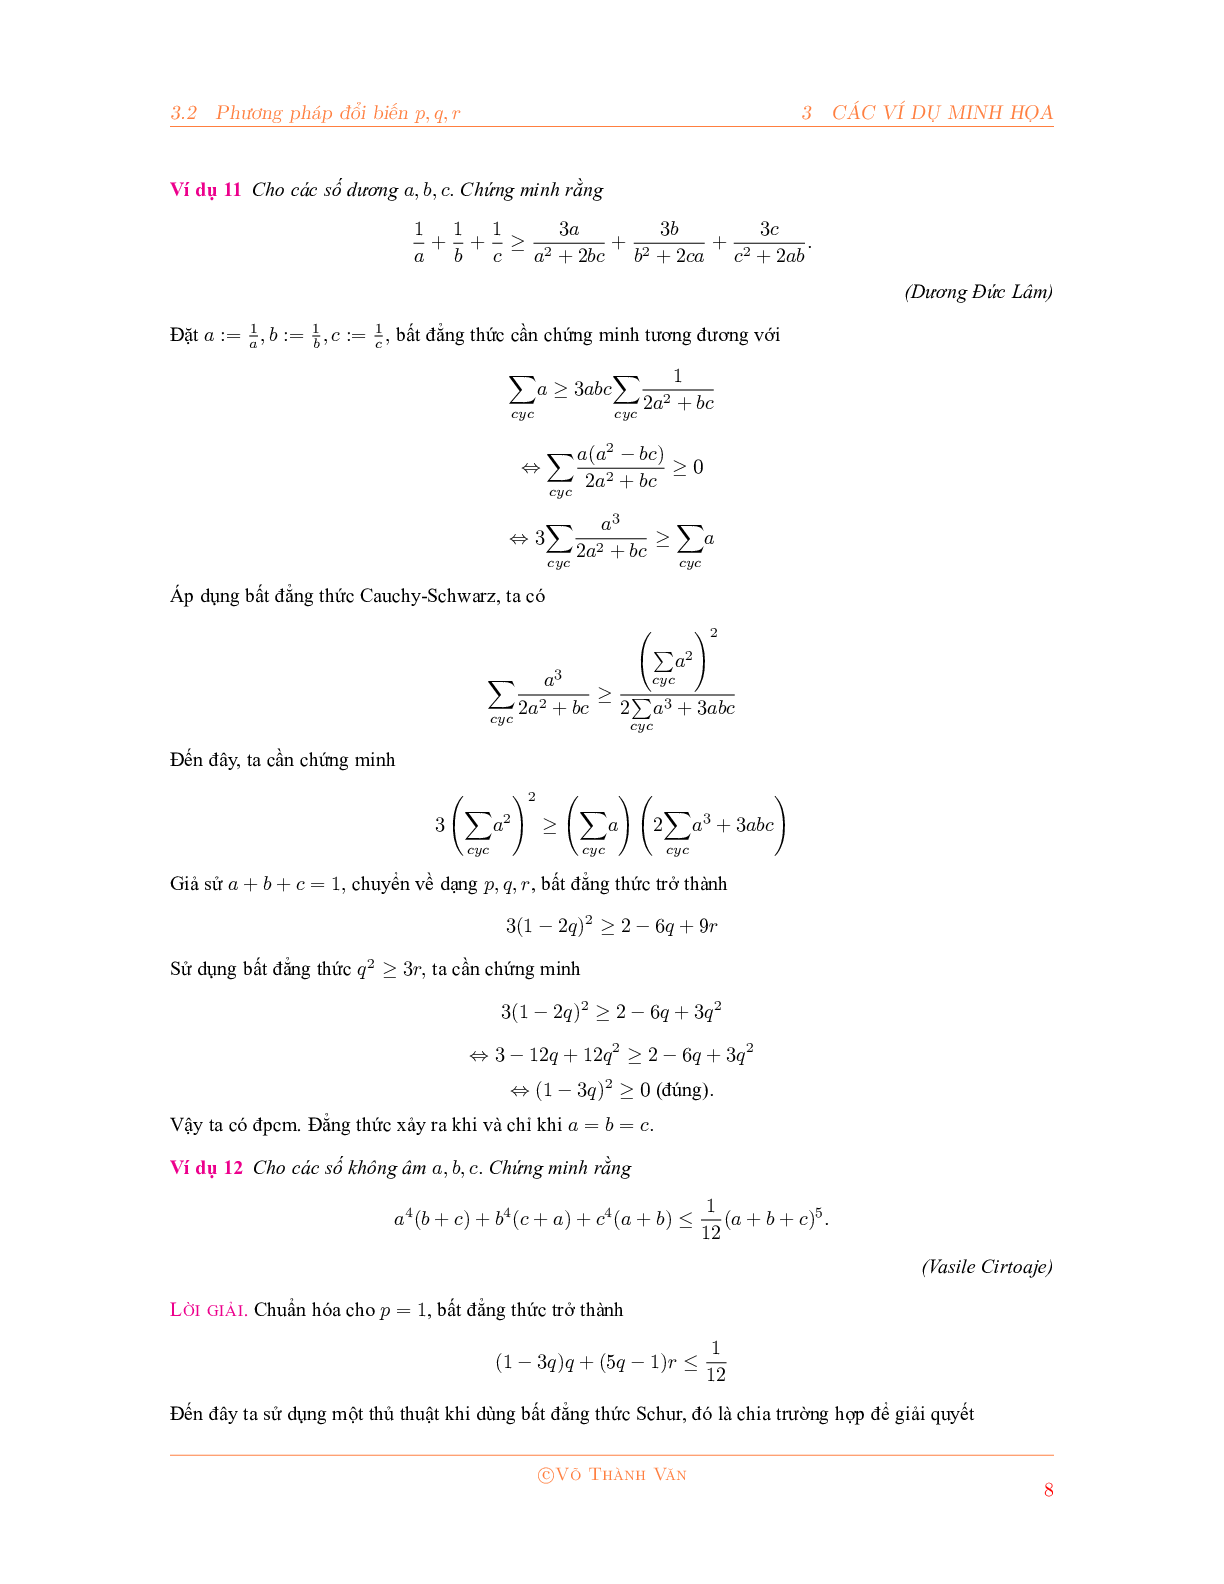 Bất đẳng thức Schur và phương pháp đổi biến P, Q, R 2023 đầy đủ, chi tiết (trang 8)